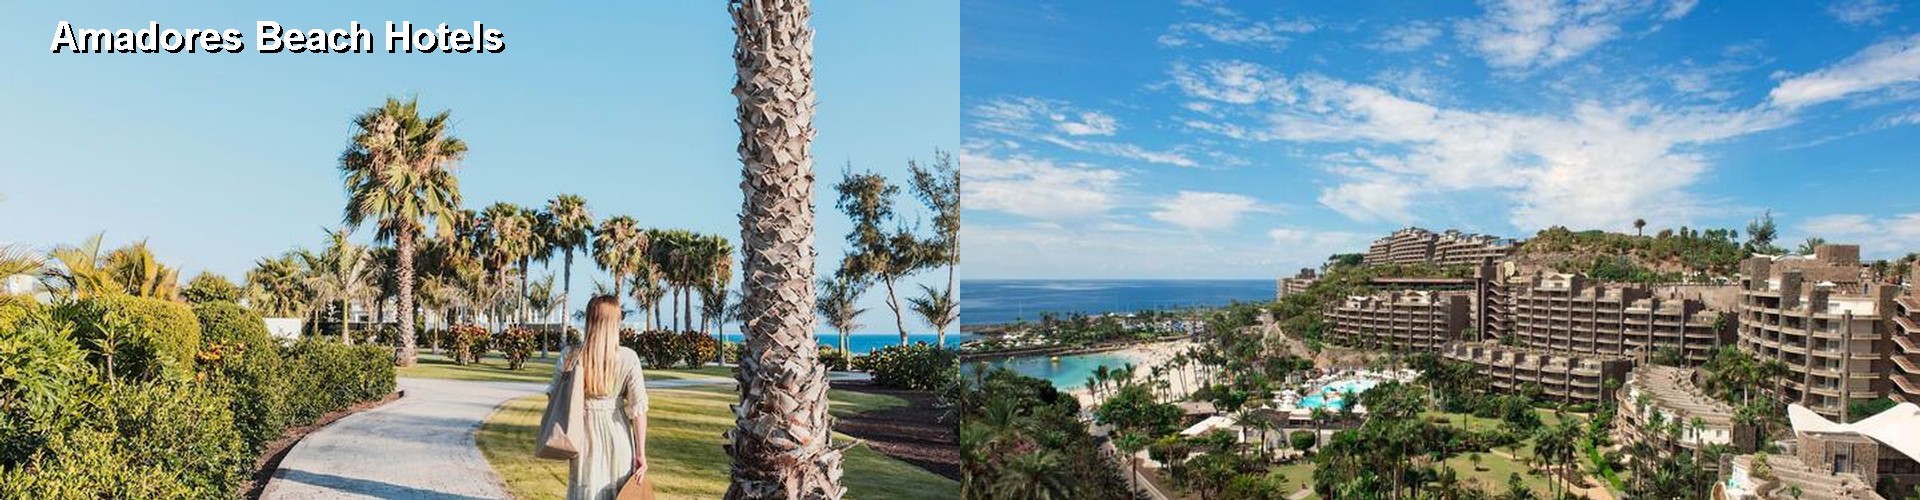 5 Best Hotels near Amadores Beach